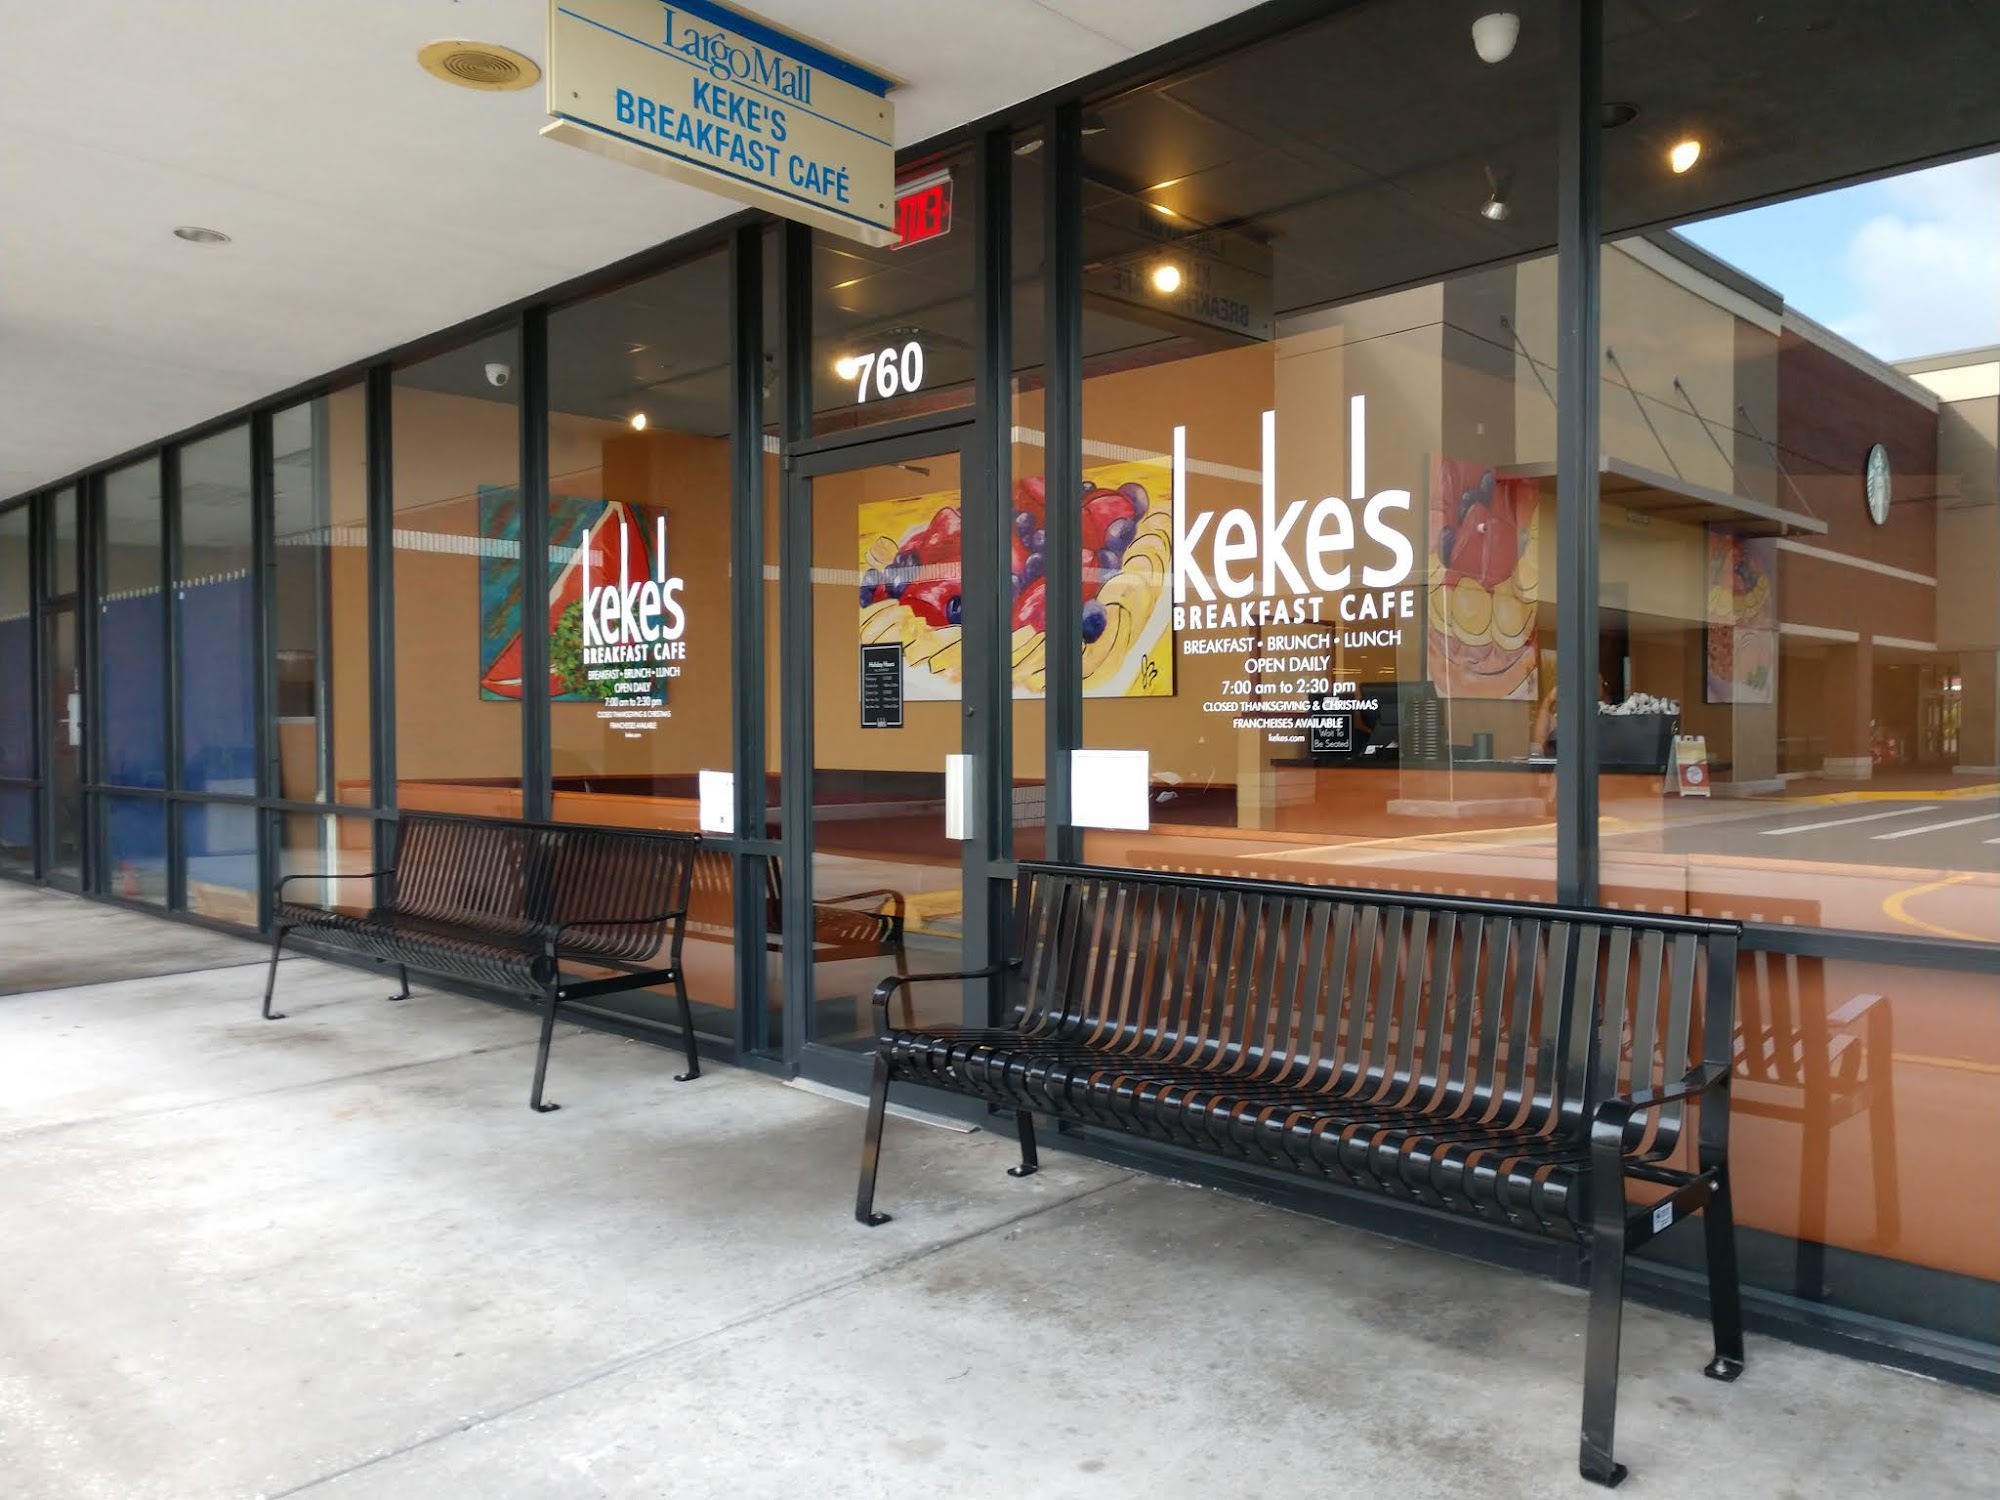 Keke's Breakfast Cafe 10500 Ulmerton Rd #760, Largo, FL 33771